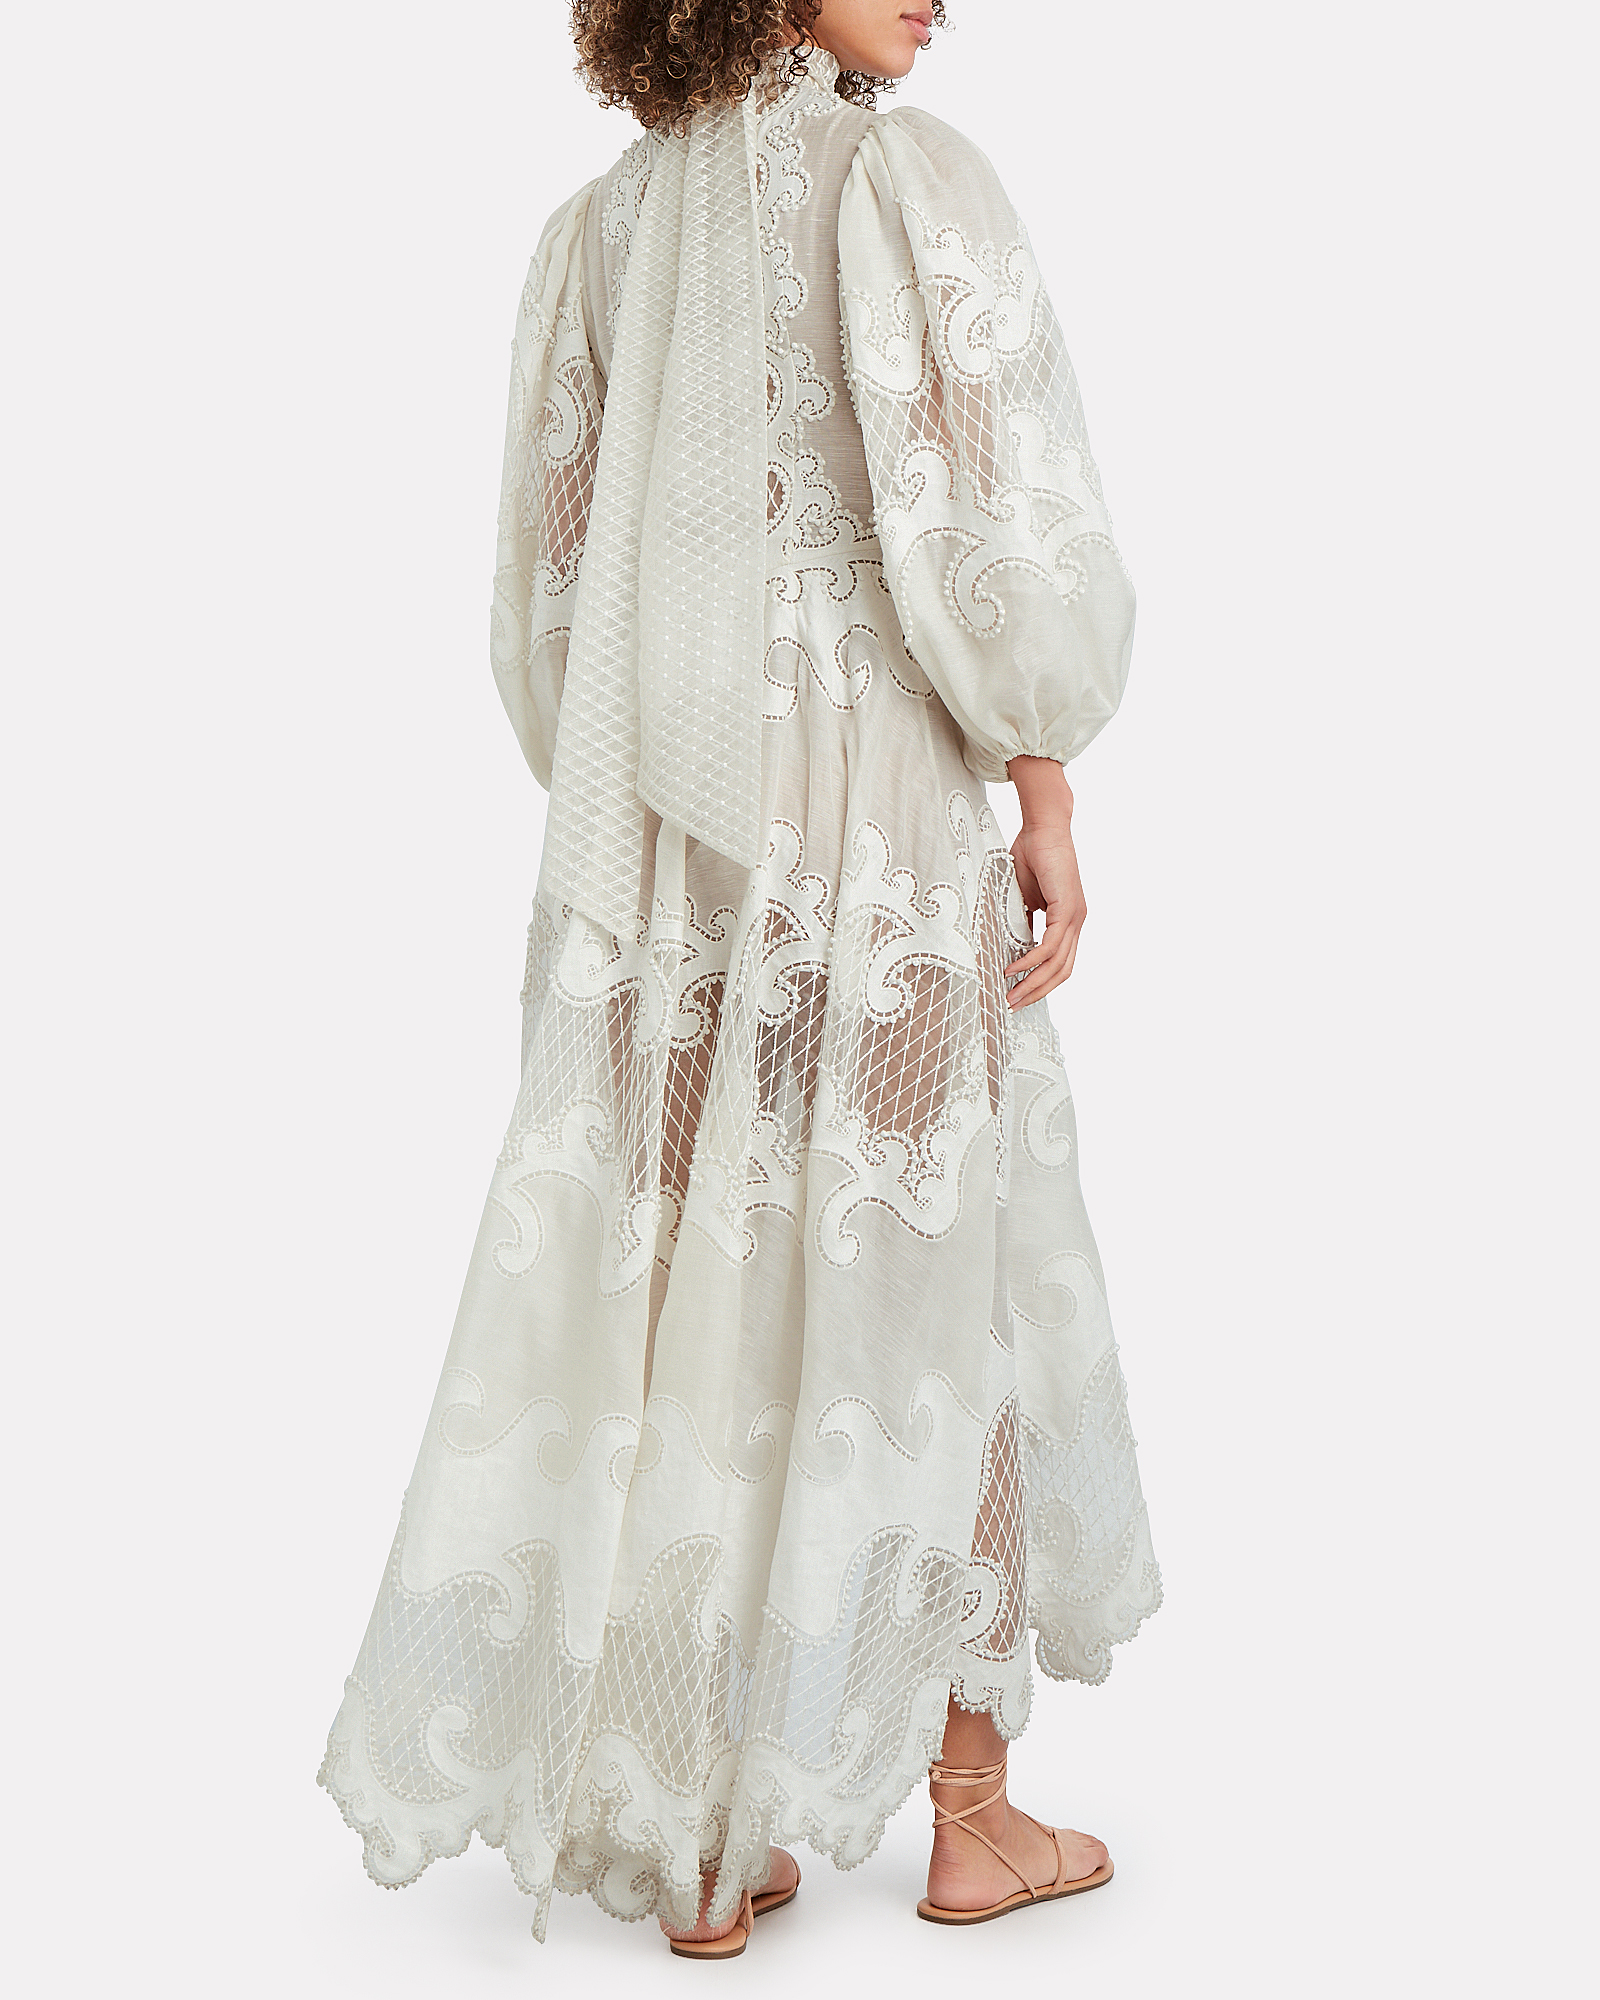 Zimmermann | Brightside Embroidered Dress | INTERMIX®